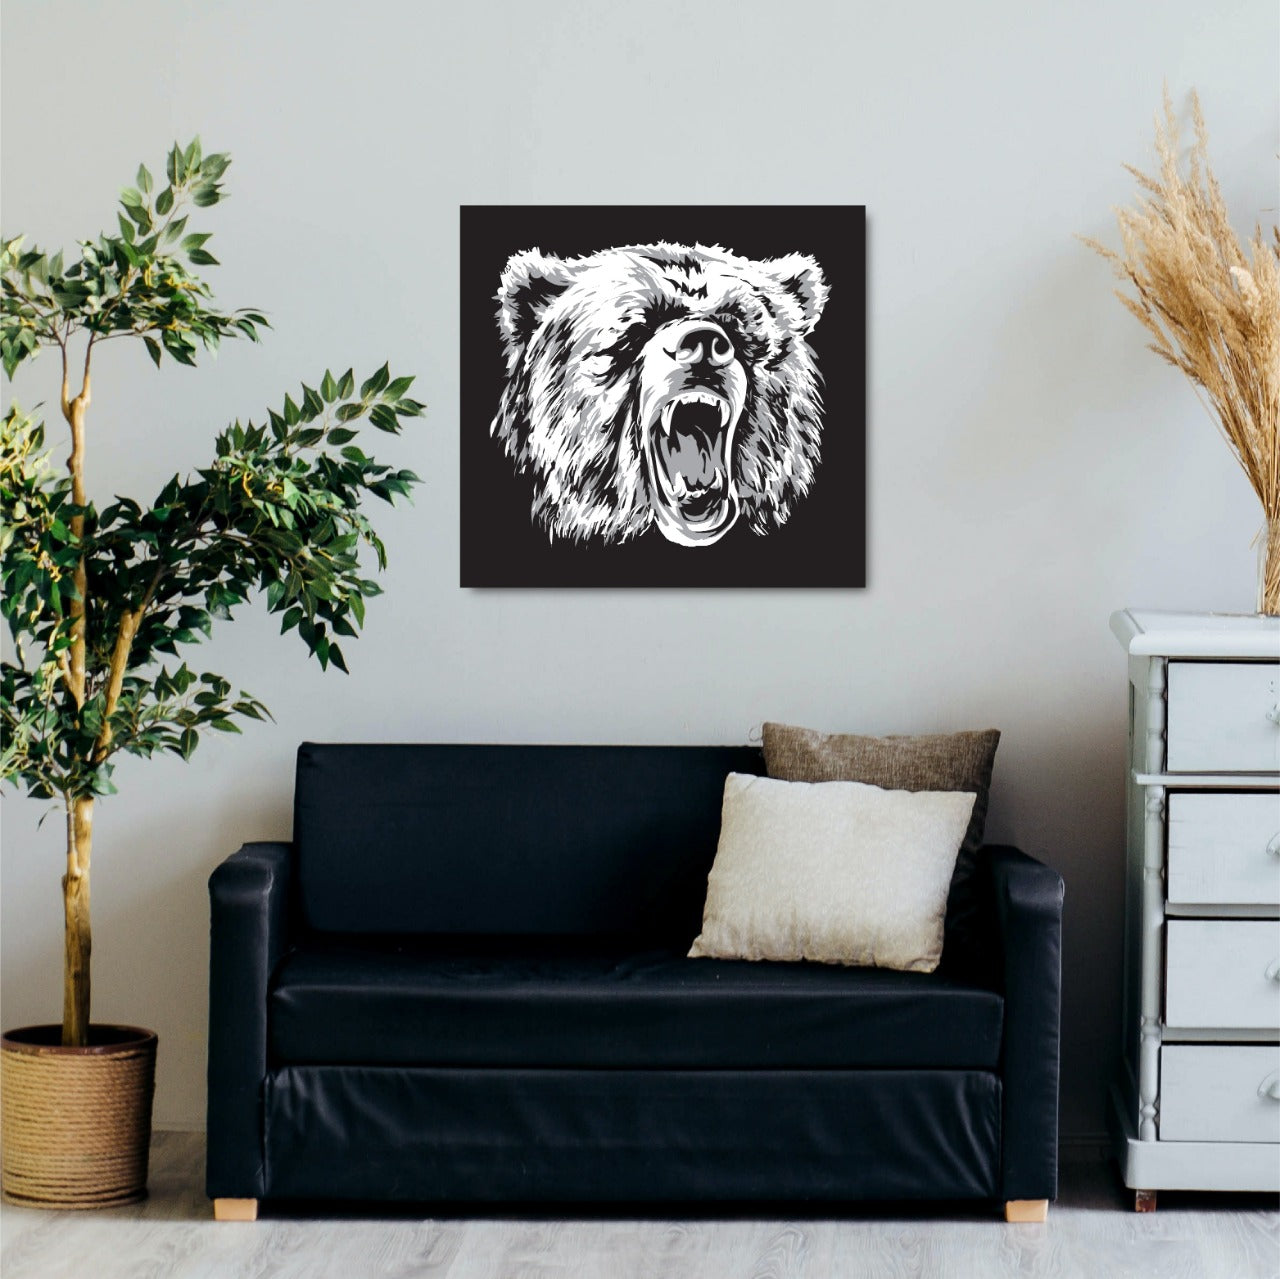 Angry Bear Cuadro decorativo - Maxigráfica Shop